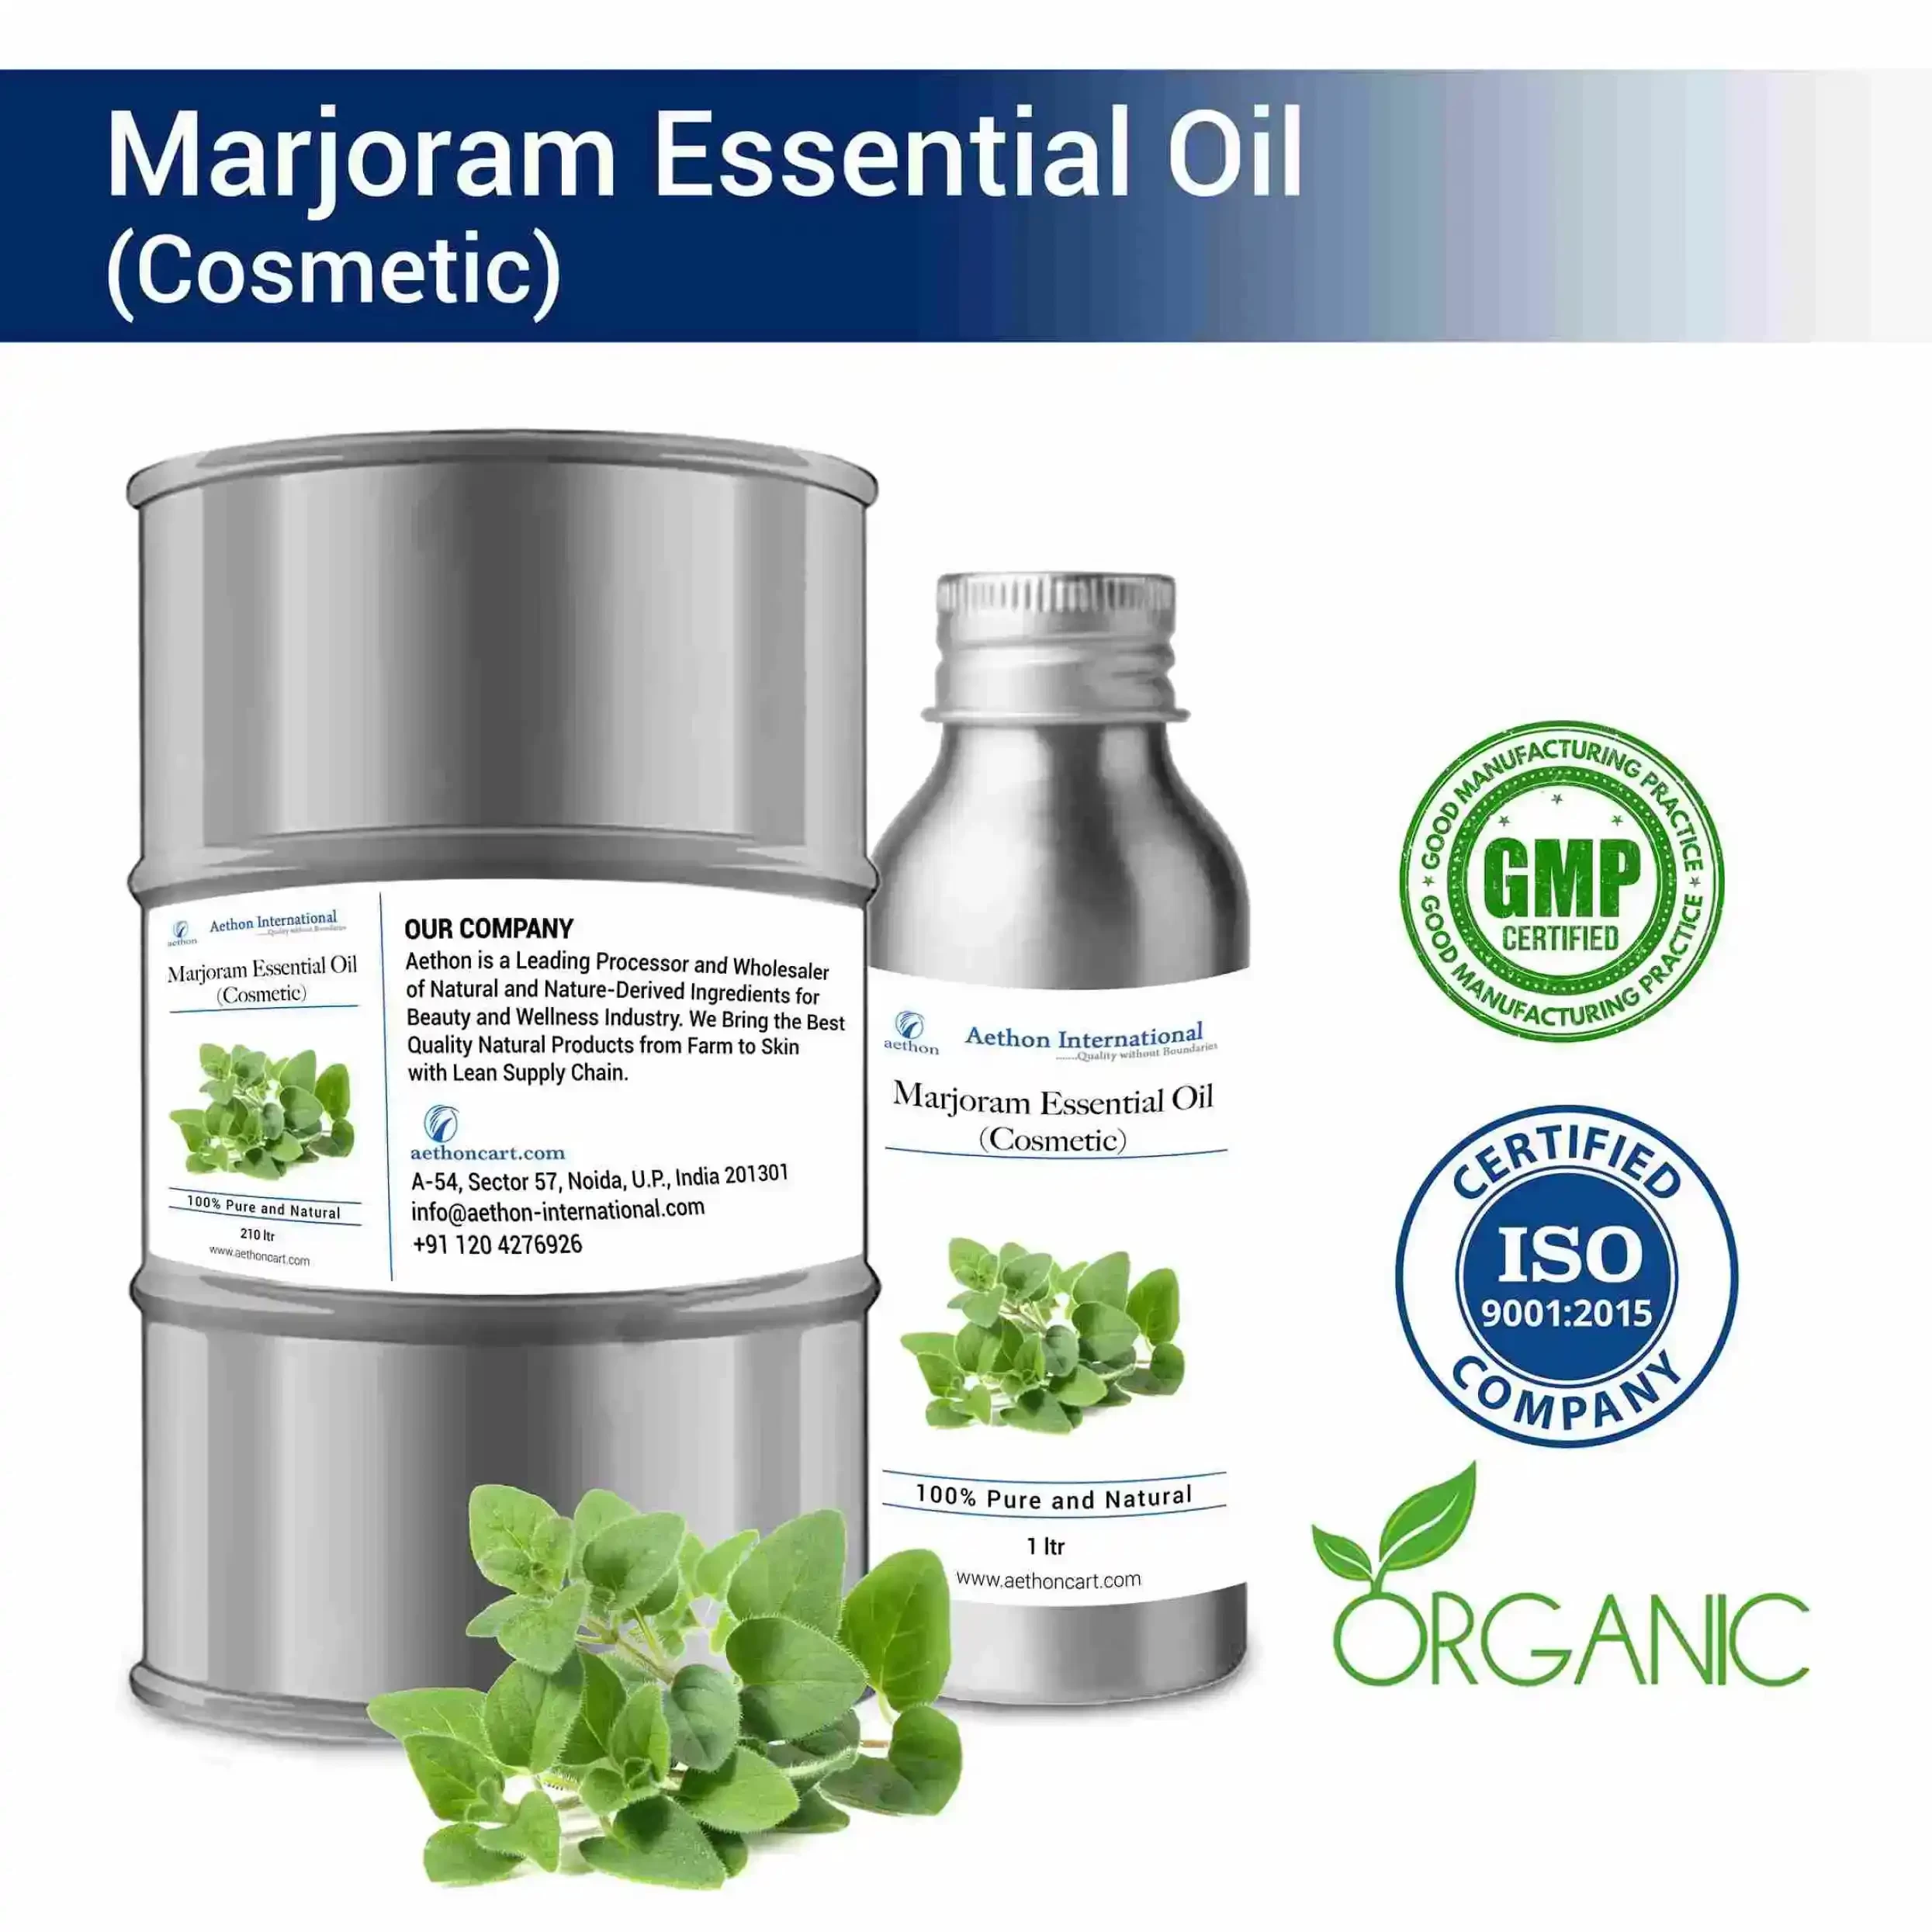 Marjoram Essential Oil (Cosmetic)